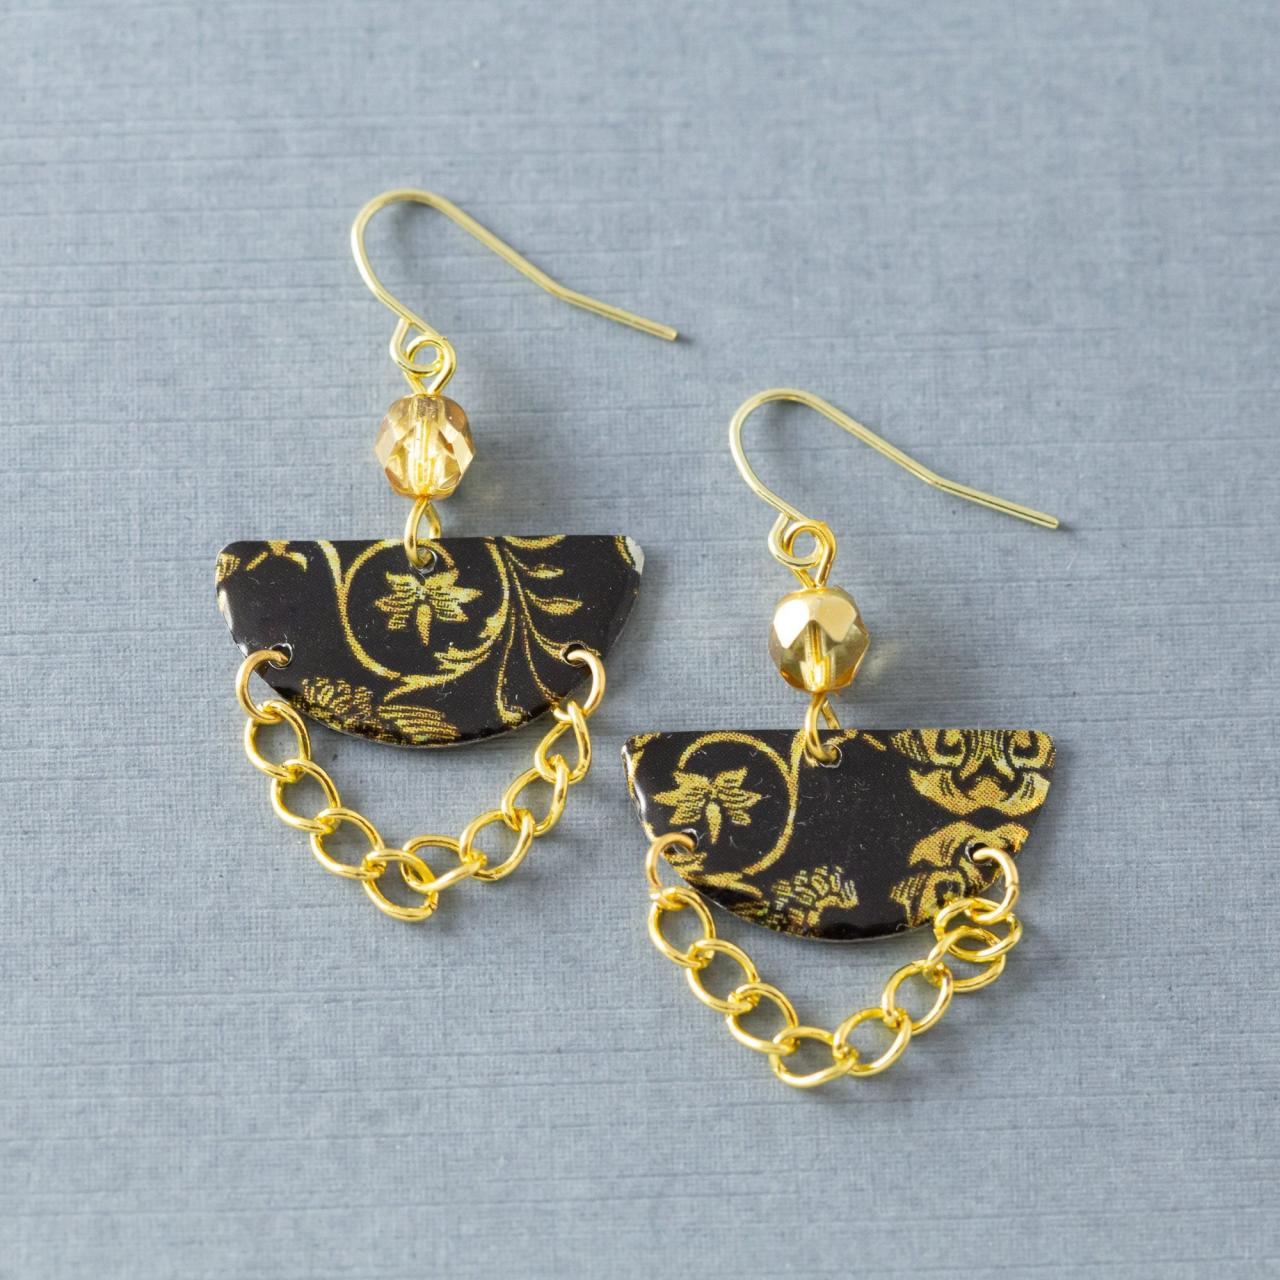 Gold & Black Half Circle Earrings, Semicircle Earrings, Gold Chain Earrings, Boho Earrings, Tin Earrings, Bohemian Jewelry